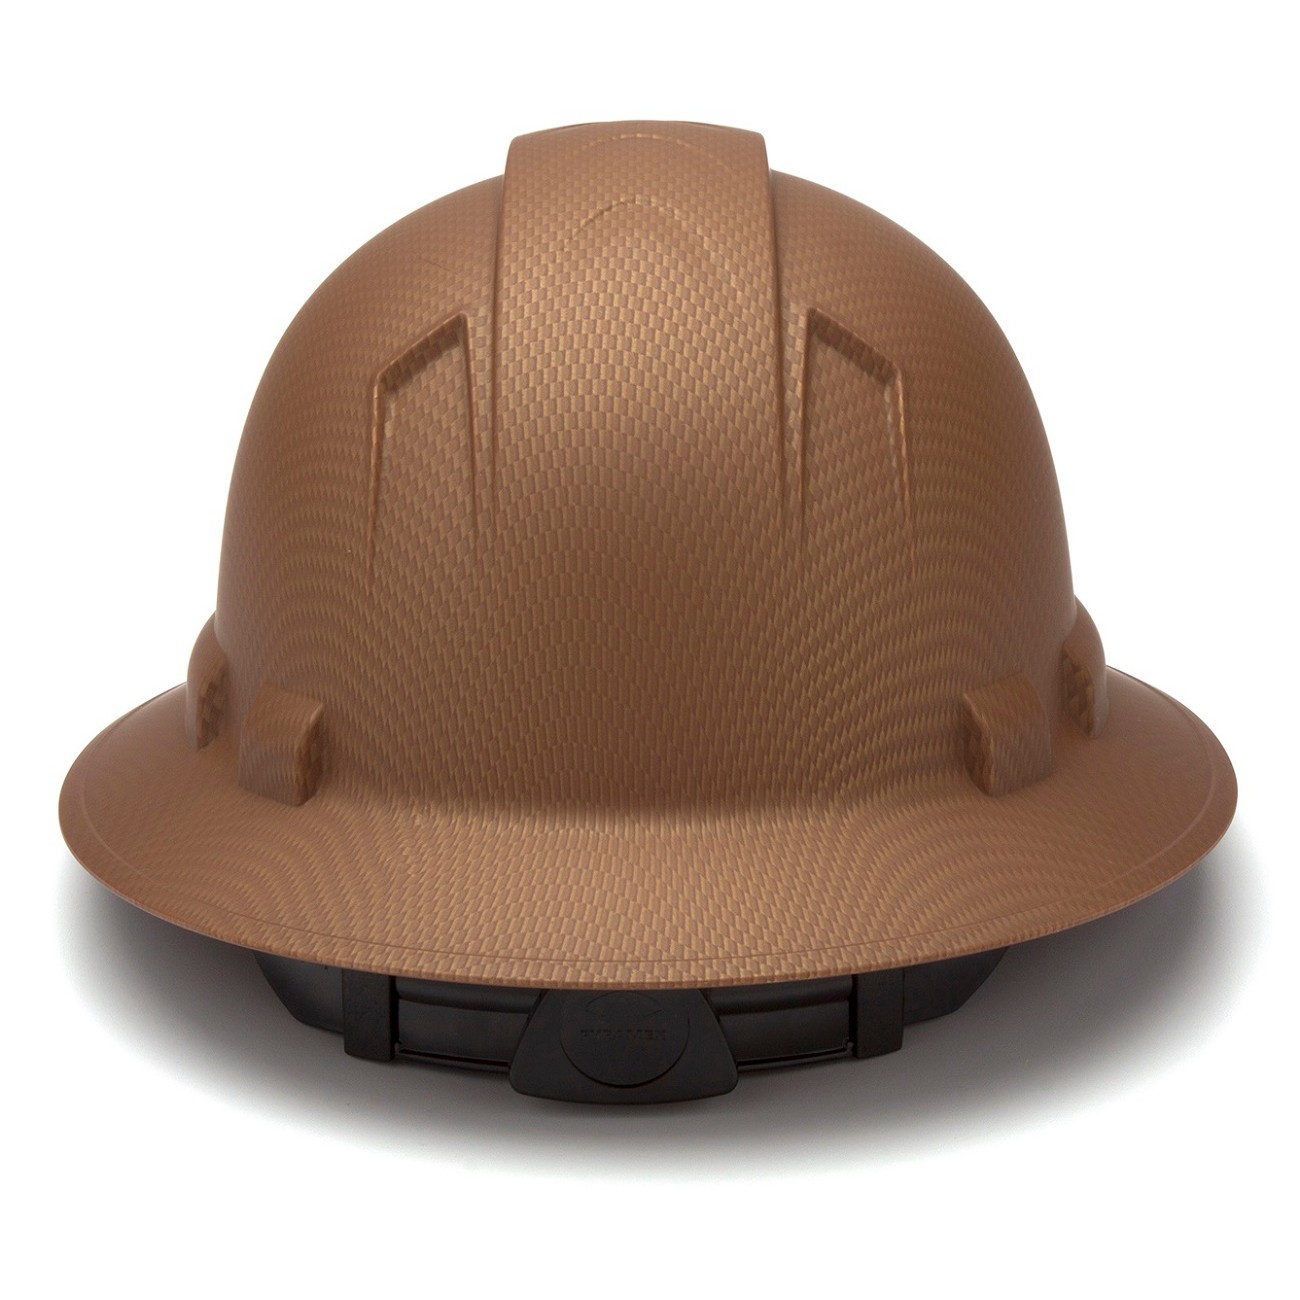 Grey One Size Copper Graphite Pyramex Safety HP44118 Ridgeline Cap Style Hard Hat